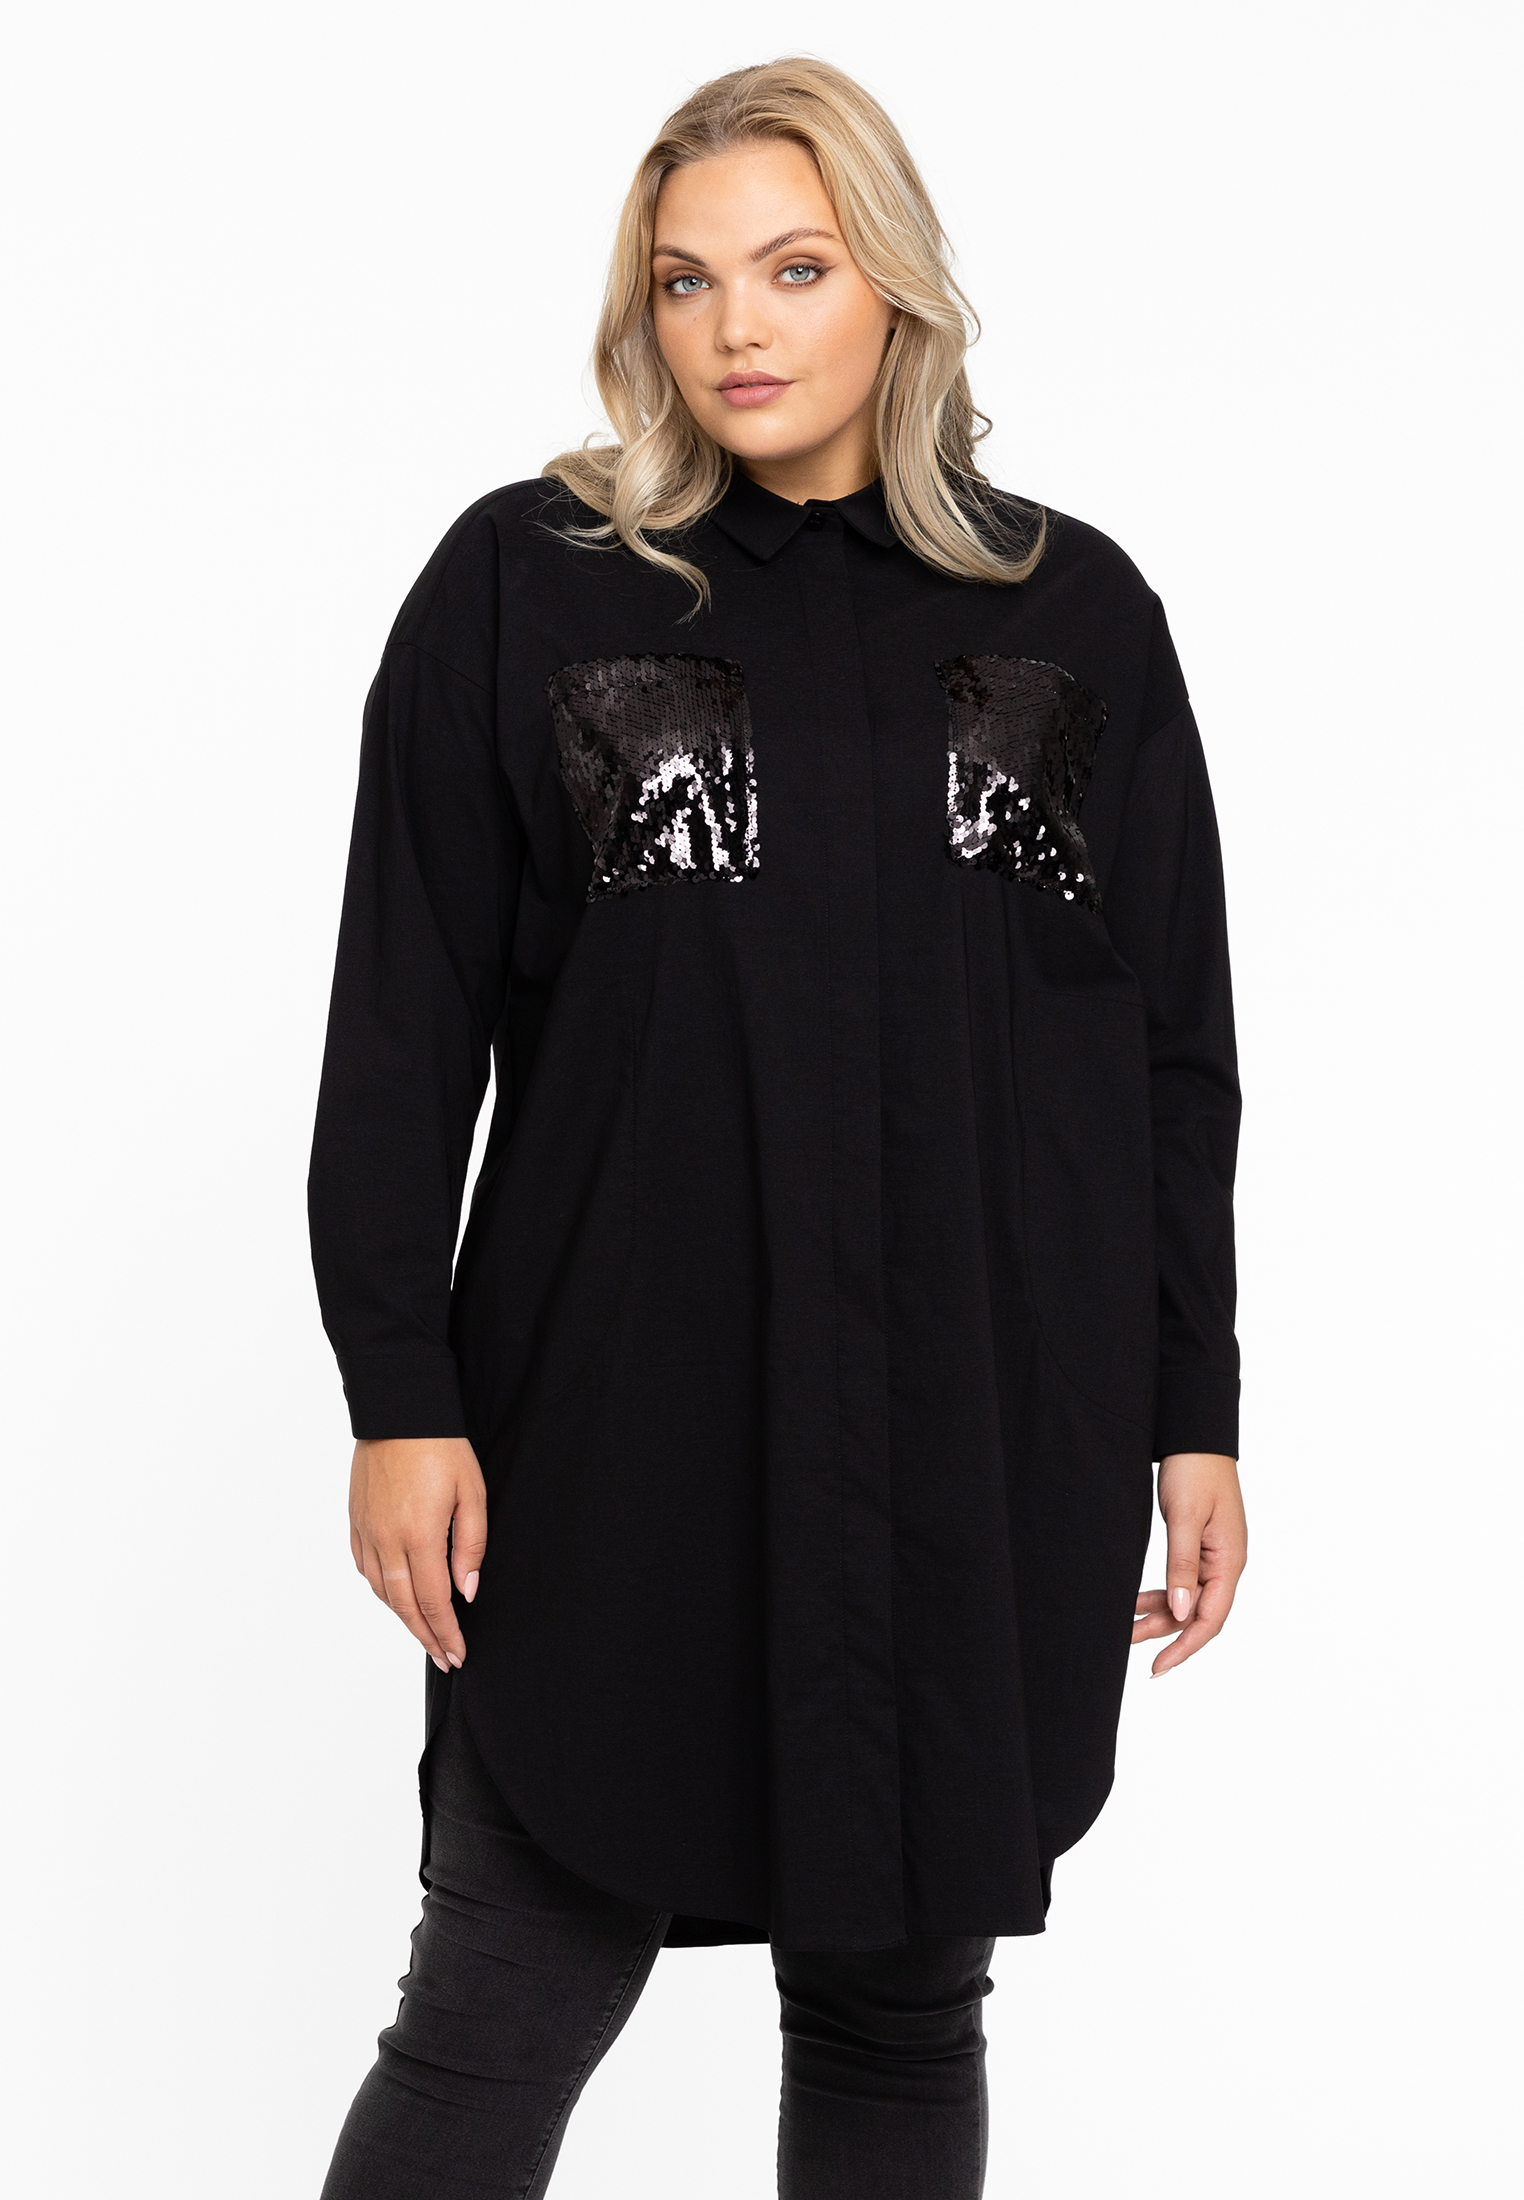 Blouse-jurk met pailletten 38/40 black